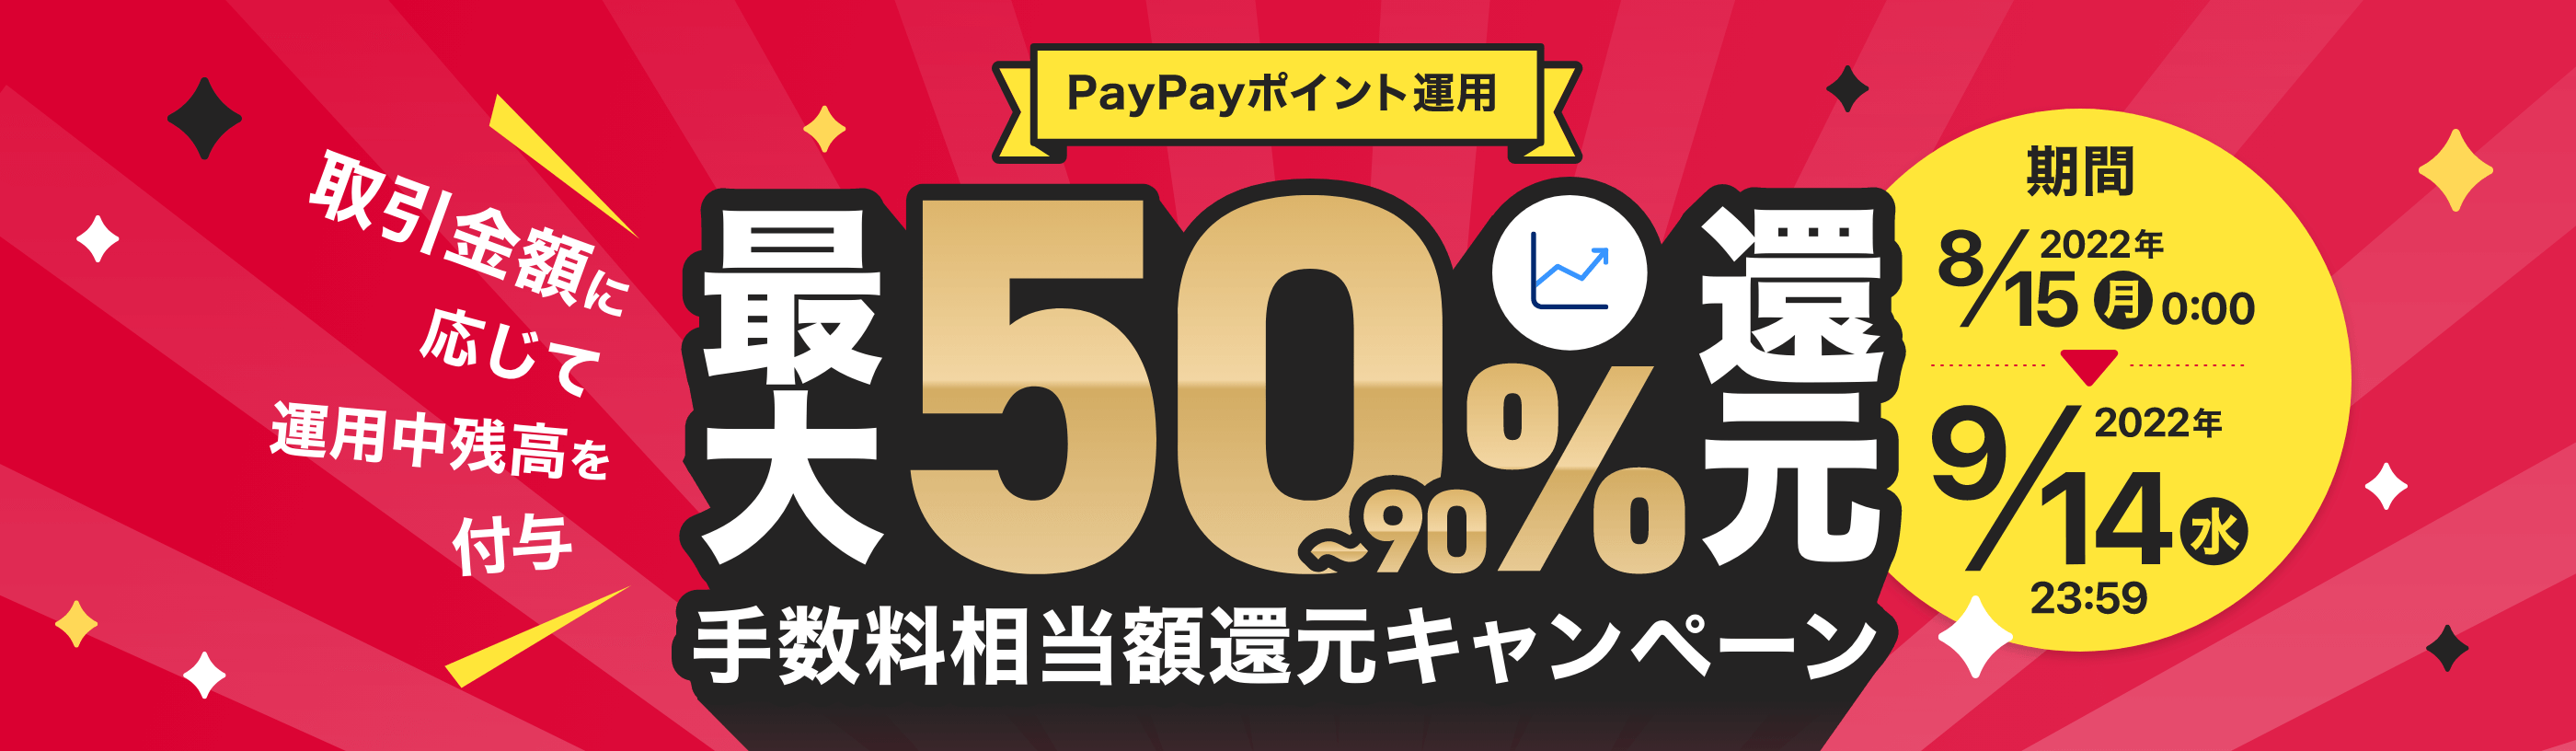 PayPayポイント運用 最大50～90%還元 手数料相当額還元キャンペーン